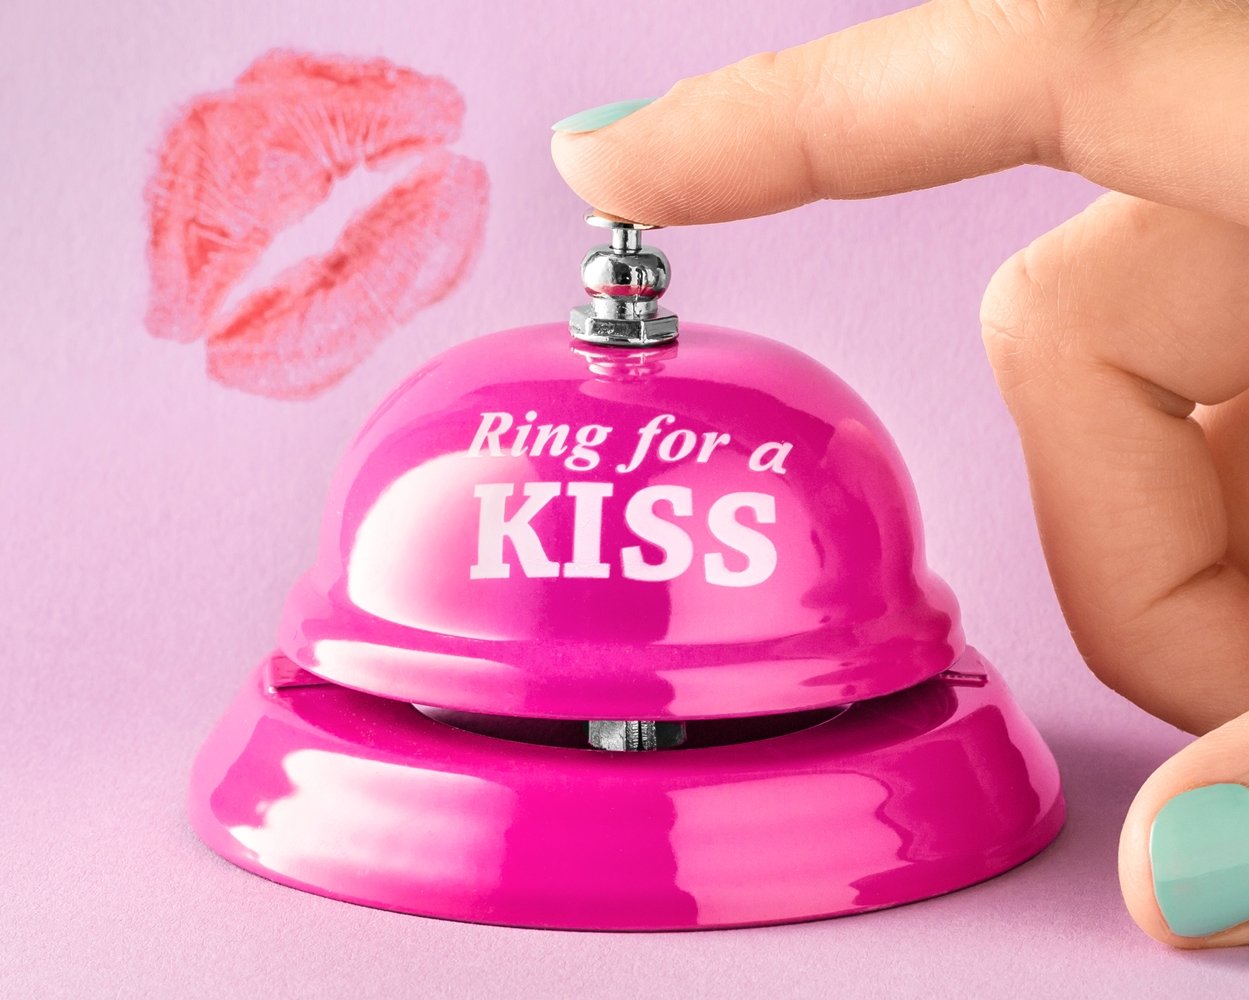 Stolný zvonček "Ring for a kiss" ružový